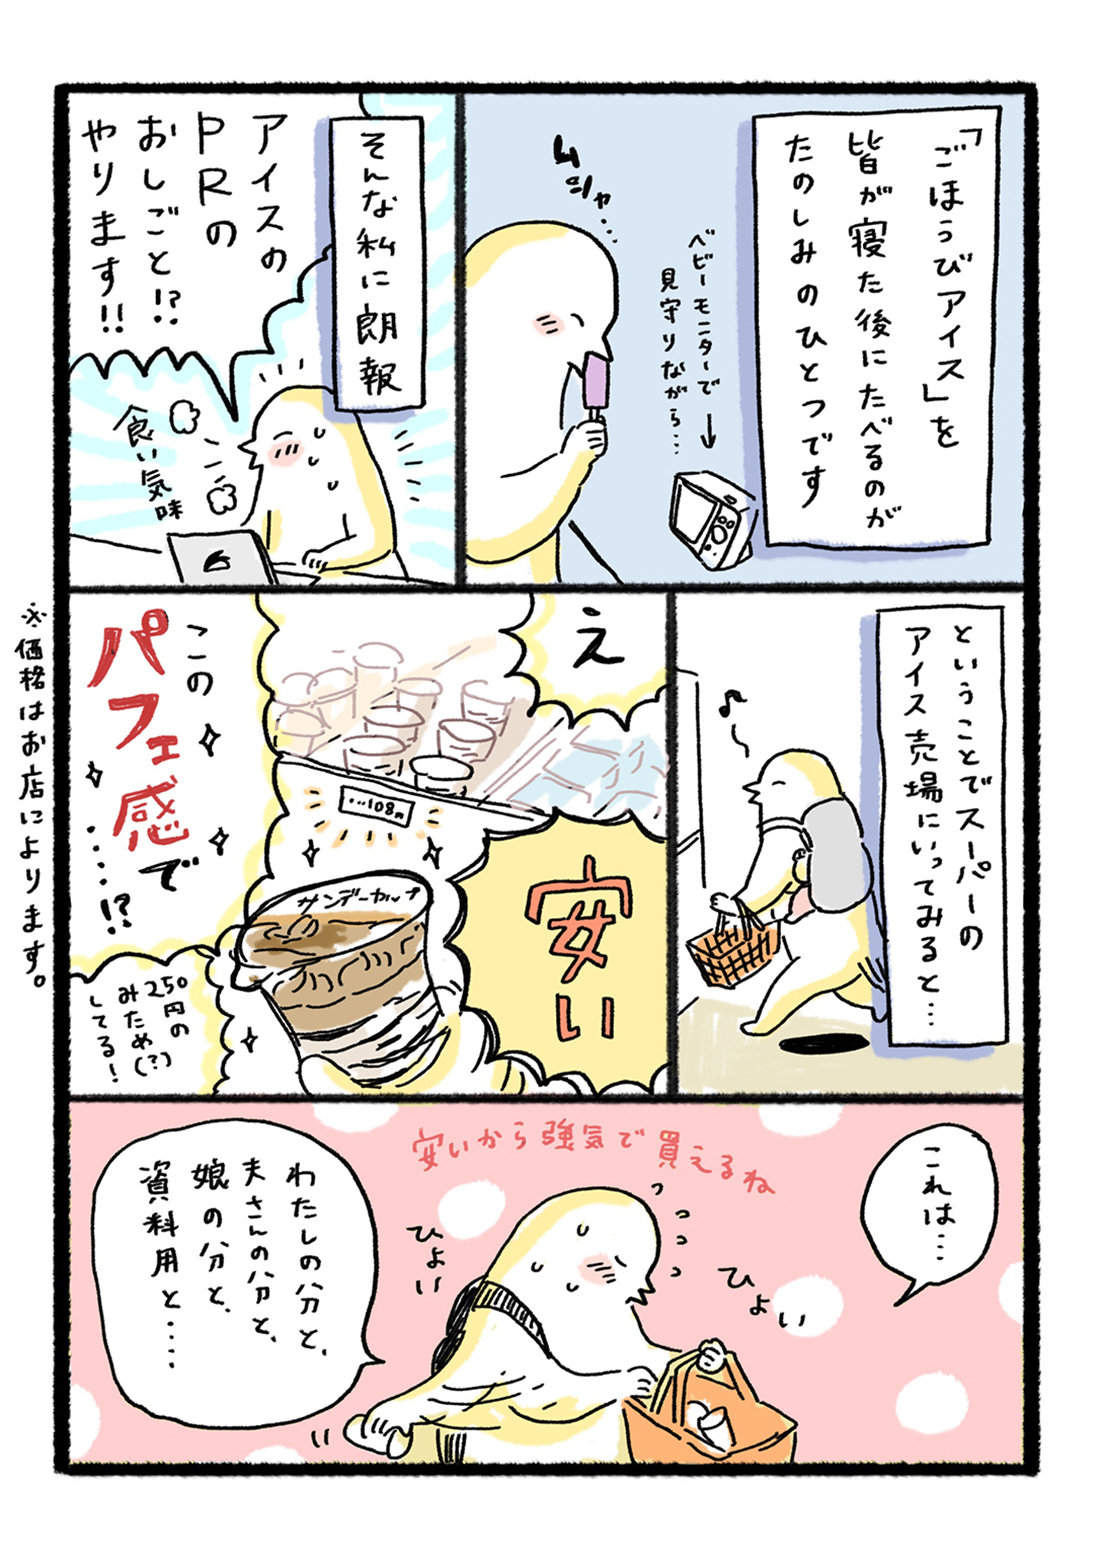 6人のtwitter Instagram人気漫画家 イラストレーターによるサンデーカップ描下ろし漫画 サンデーカップ 森永製菓